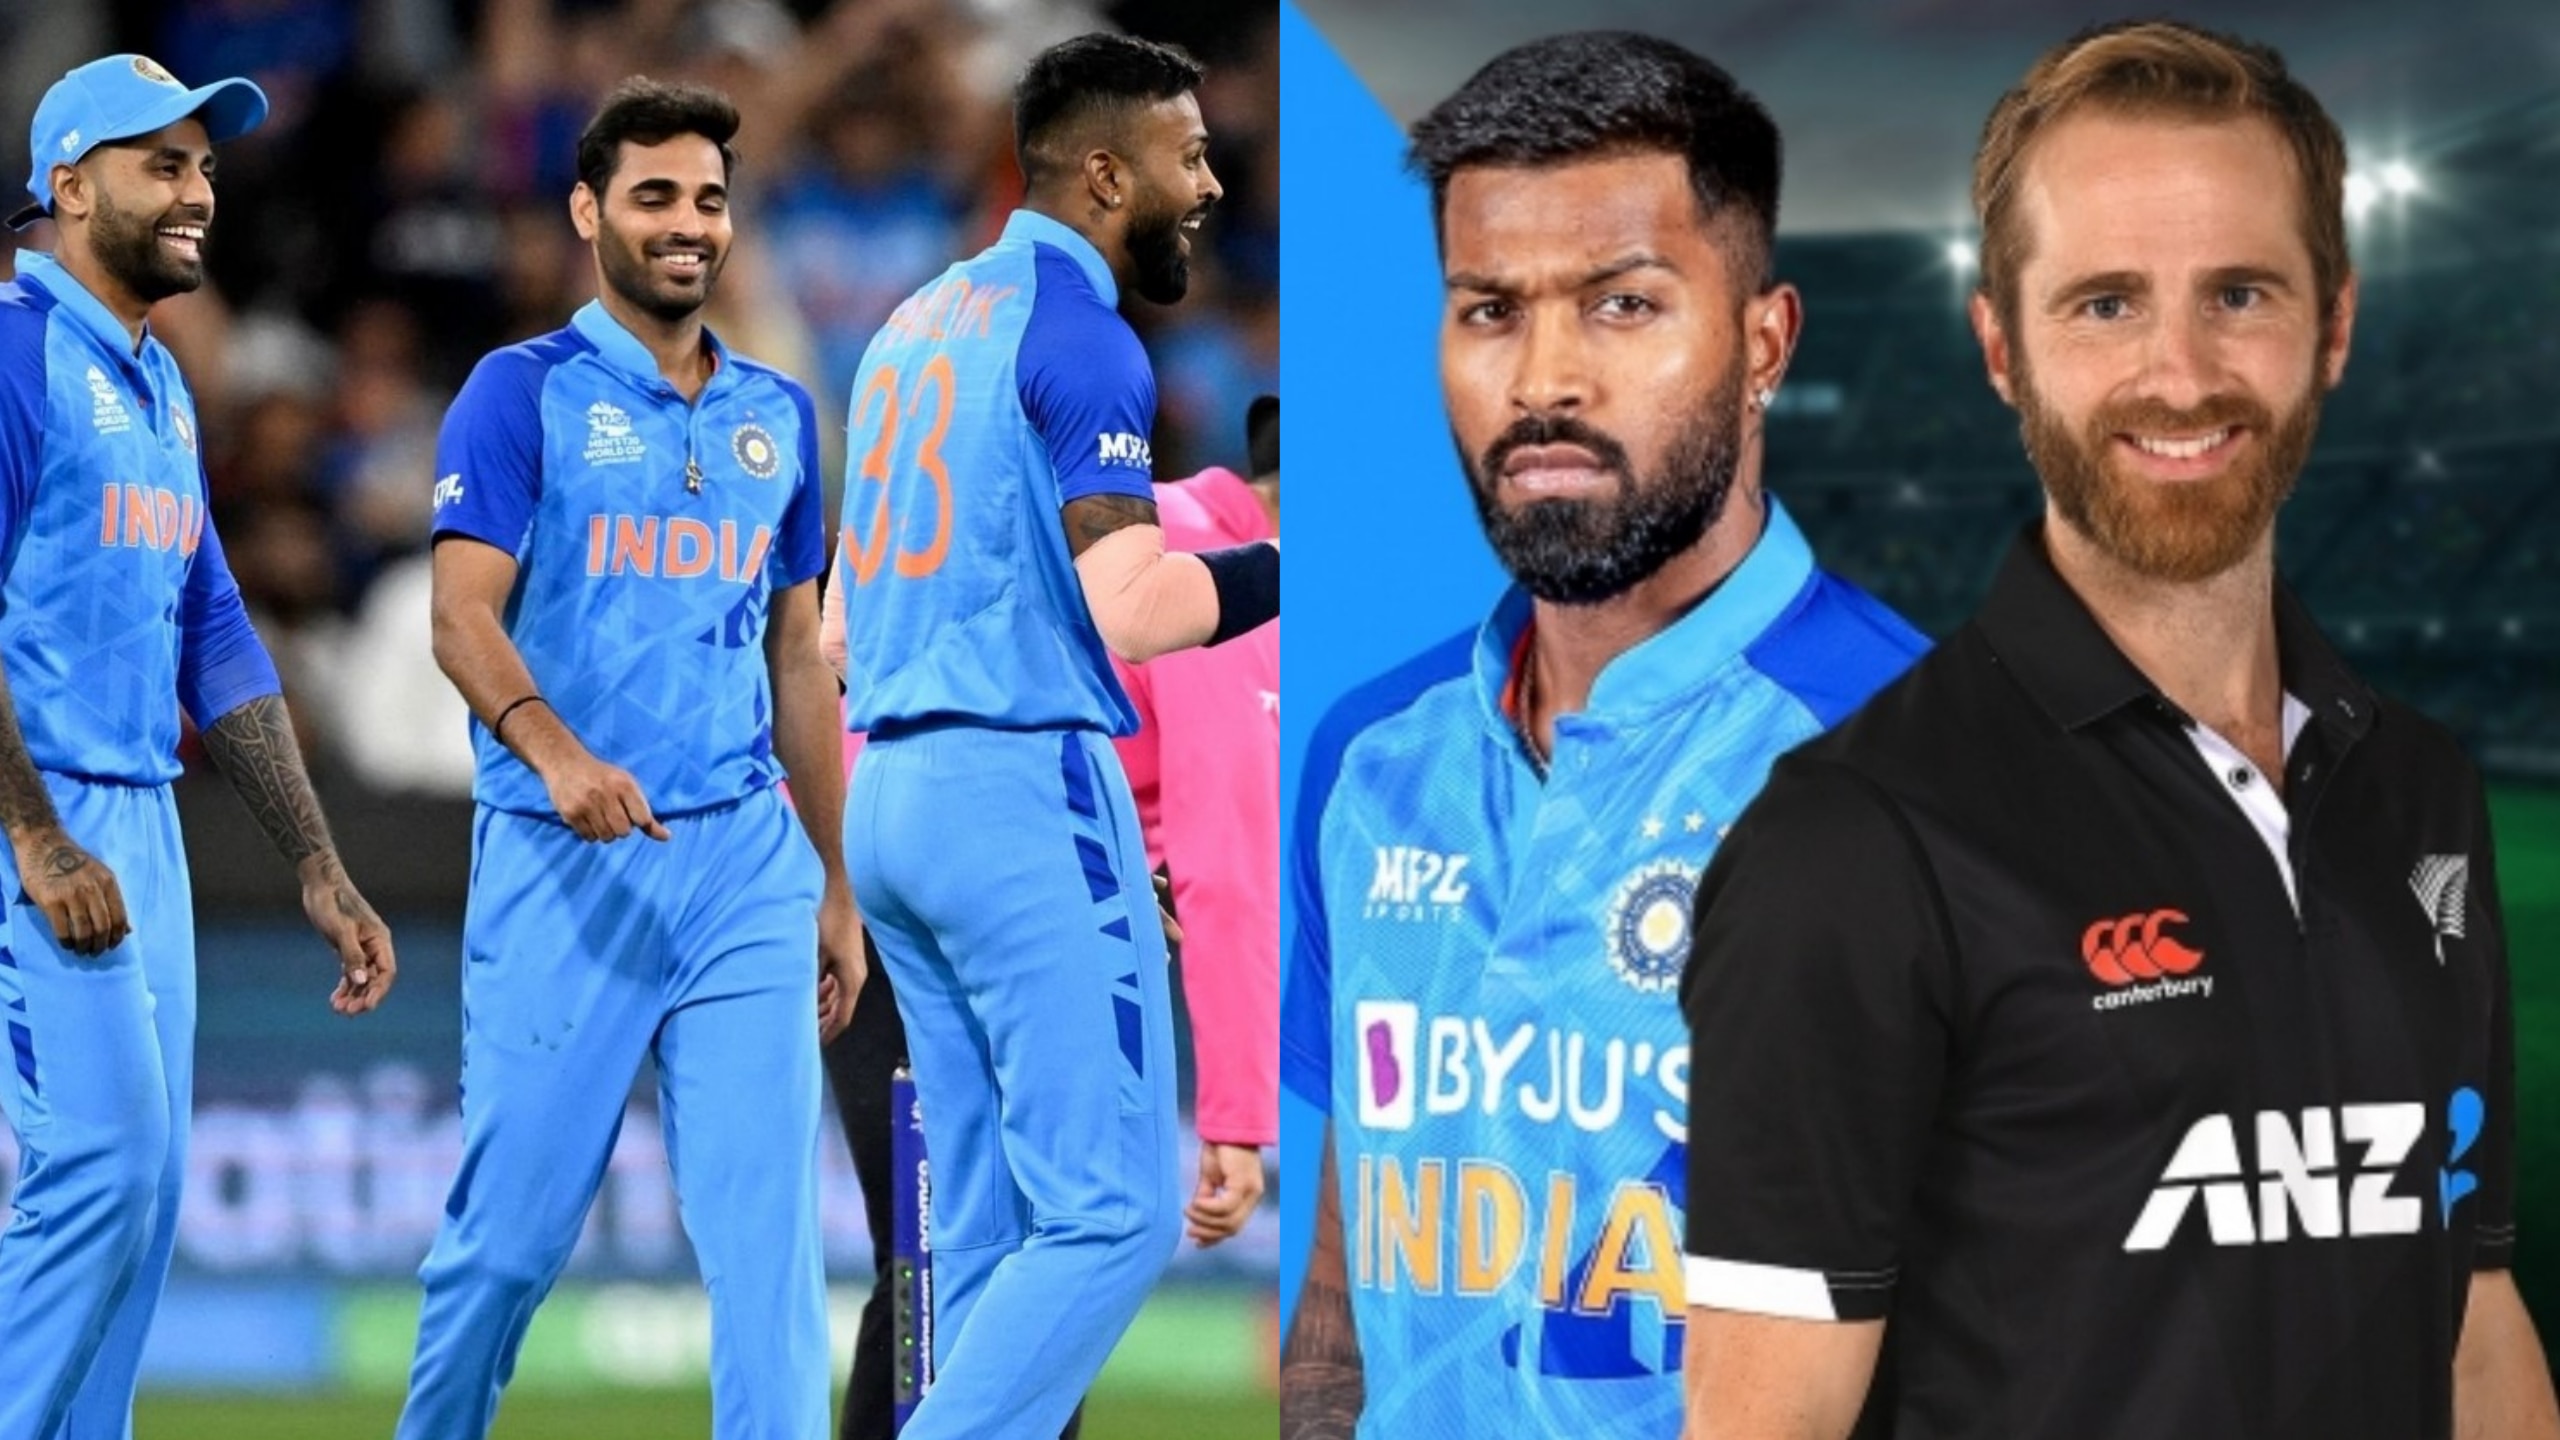 IND vs NZ: न्यूजीलैंड के खिलाफ टी20 सीरीज में पूरी तरह बदलेगी टीम इंडिया, Playing 11 में शामिल होंगे ये खतरनाक खिलाड़ी